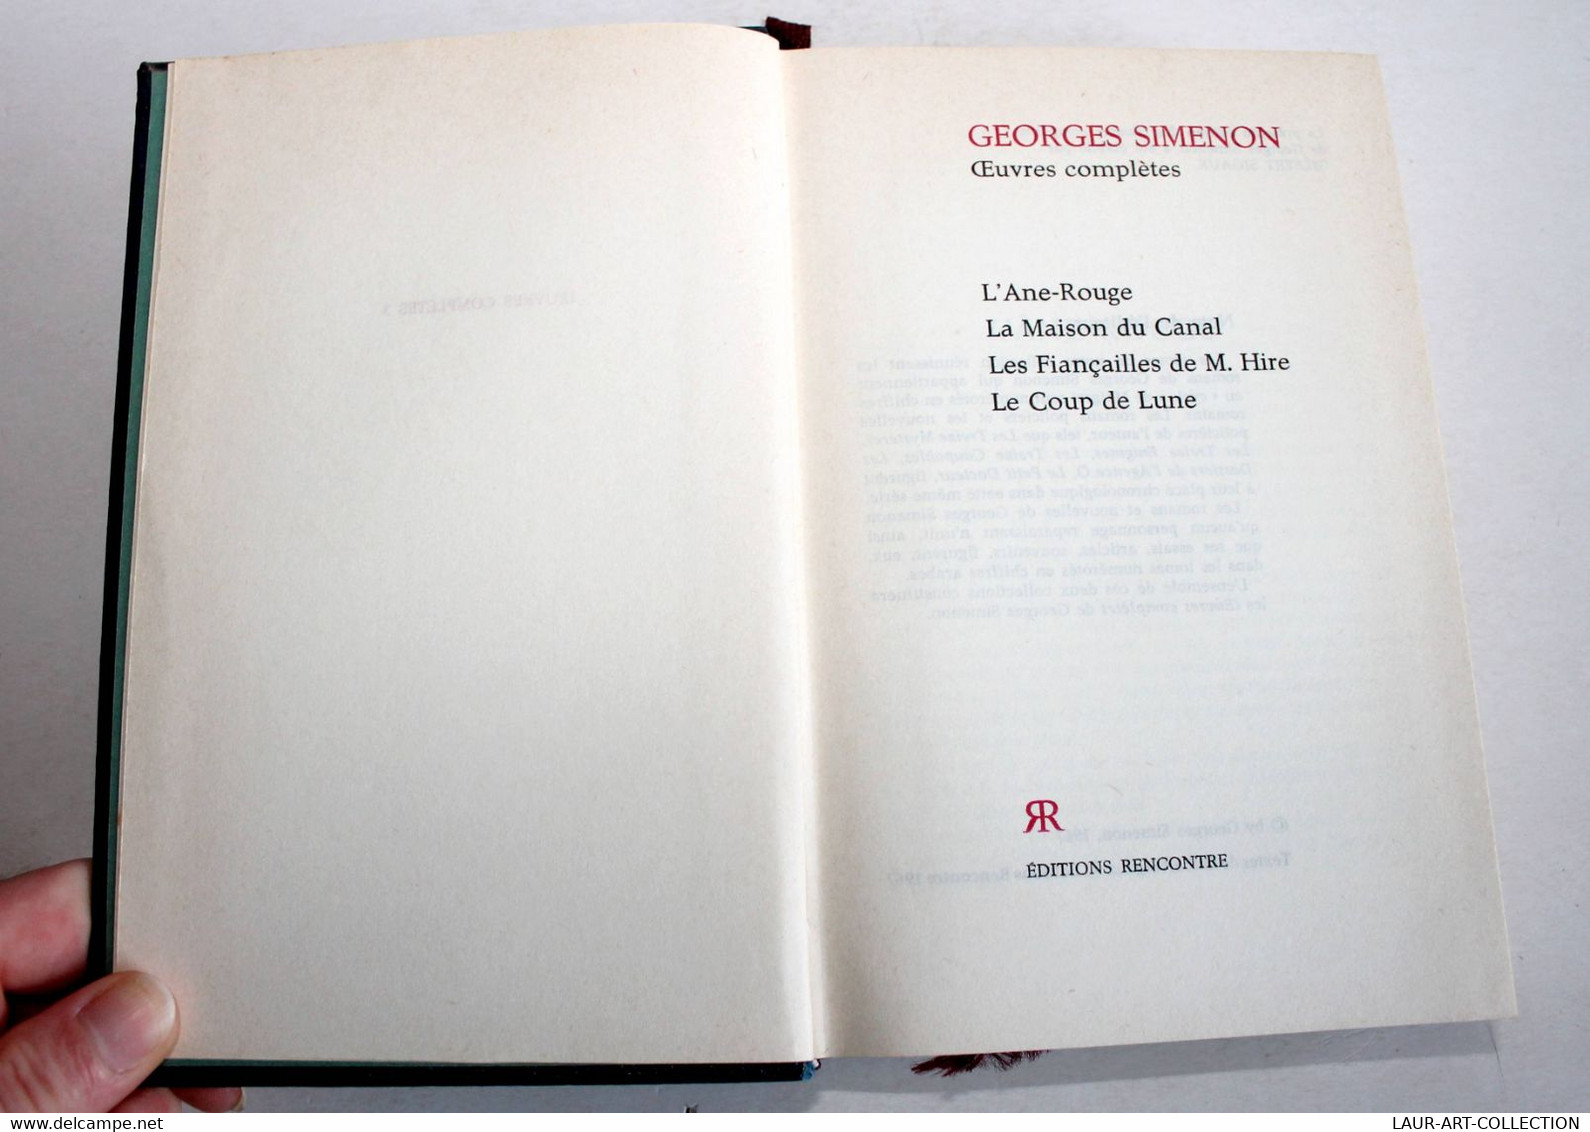 GEORGES SIMENON - OEUVRES COMPLETES N°3 L'ANE ROUGE, MAISON DU CANAL, FIANCAILLE / ANCIEN LIVRE DE COLLECTION (2301.247) - Simenon